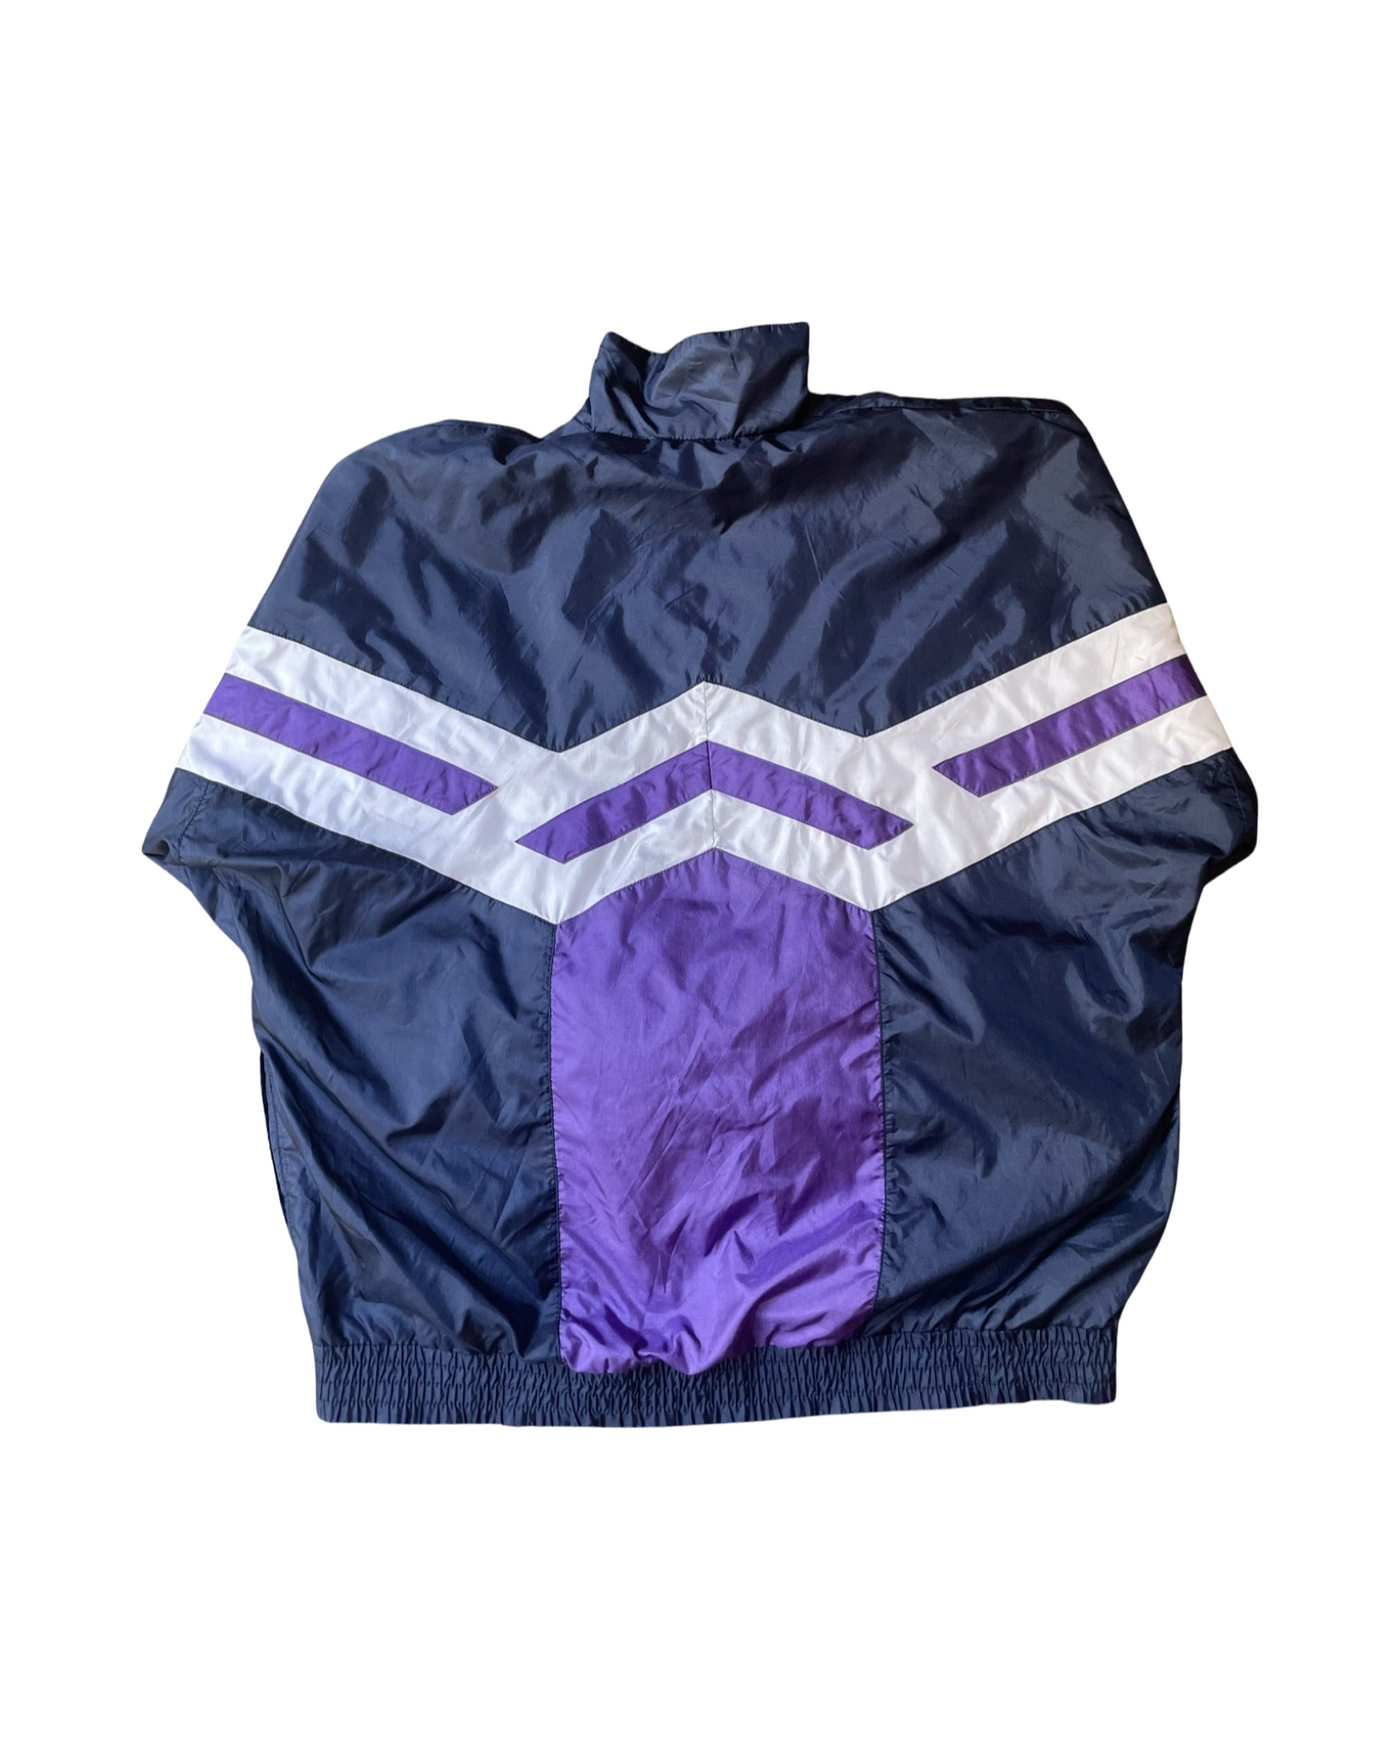 Vintage 90’s Adidas Parachute Jacket